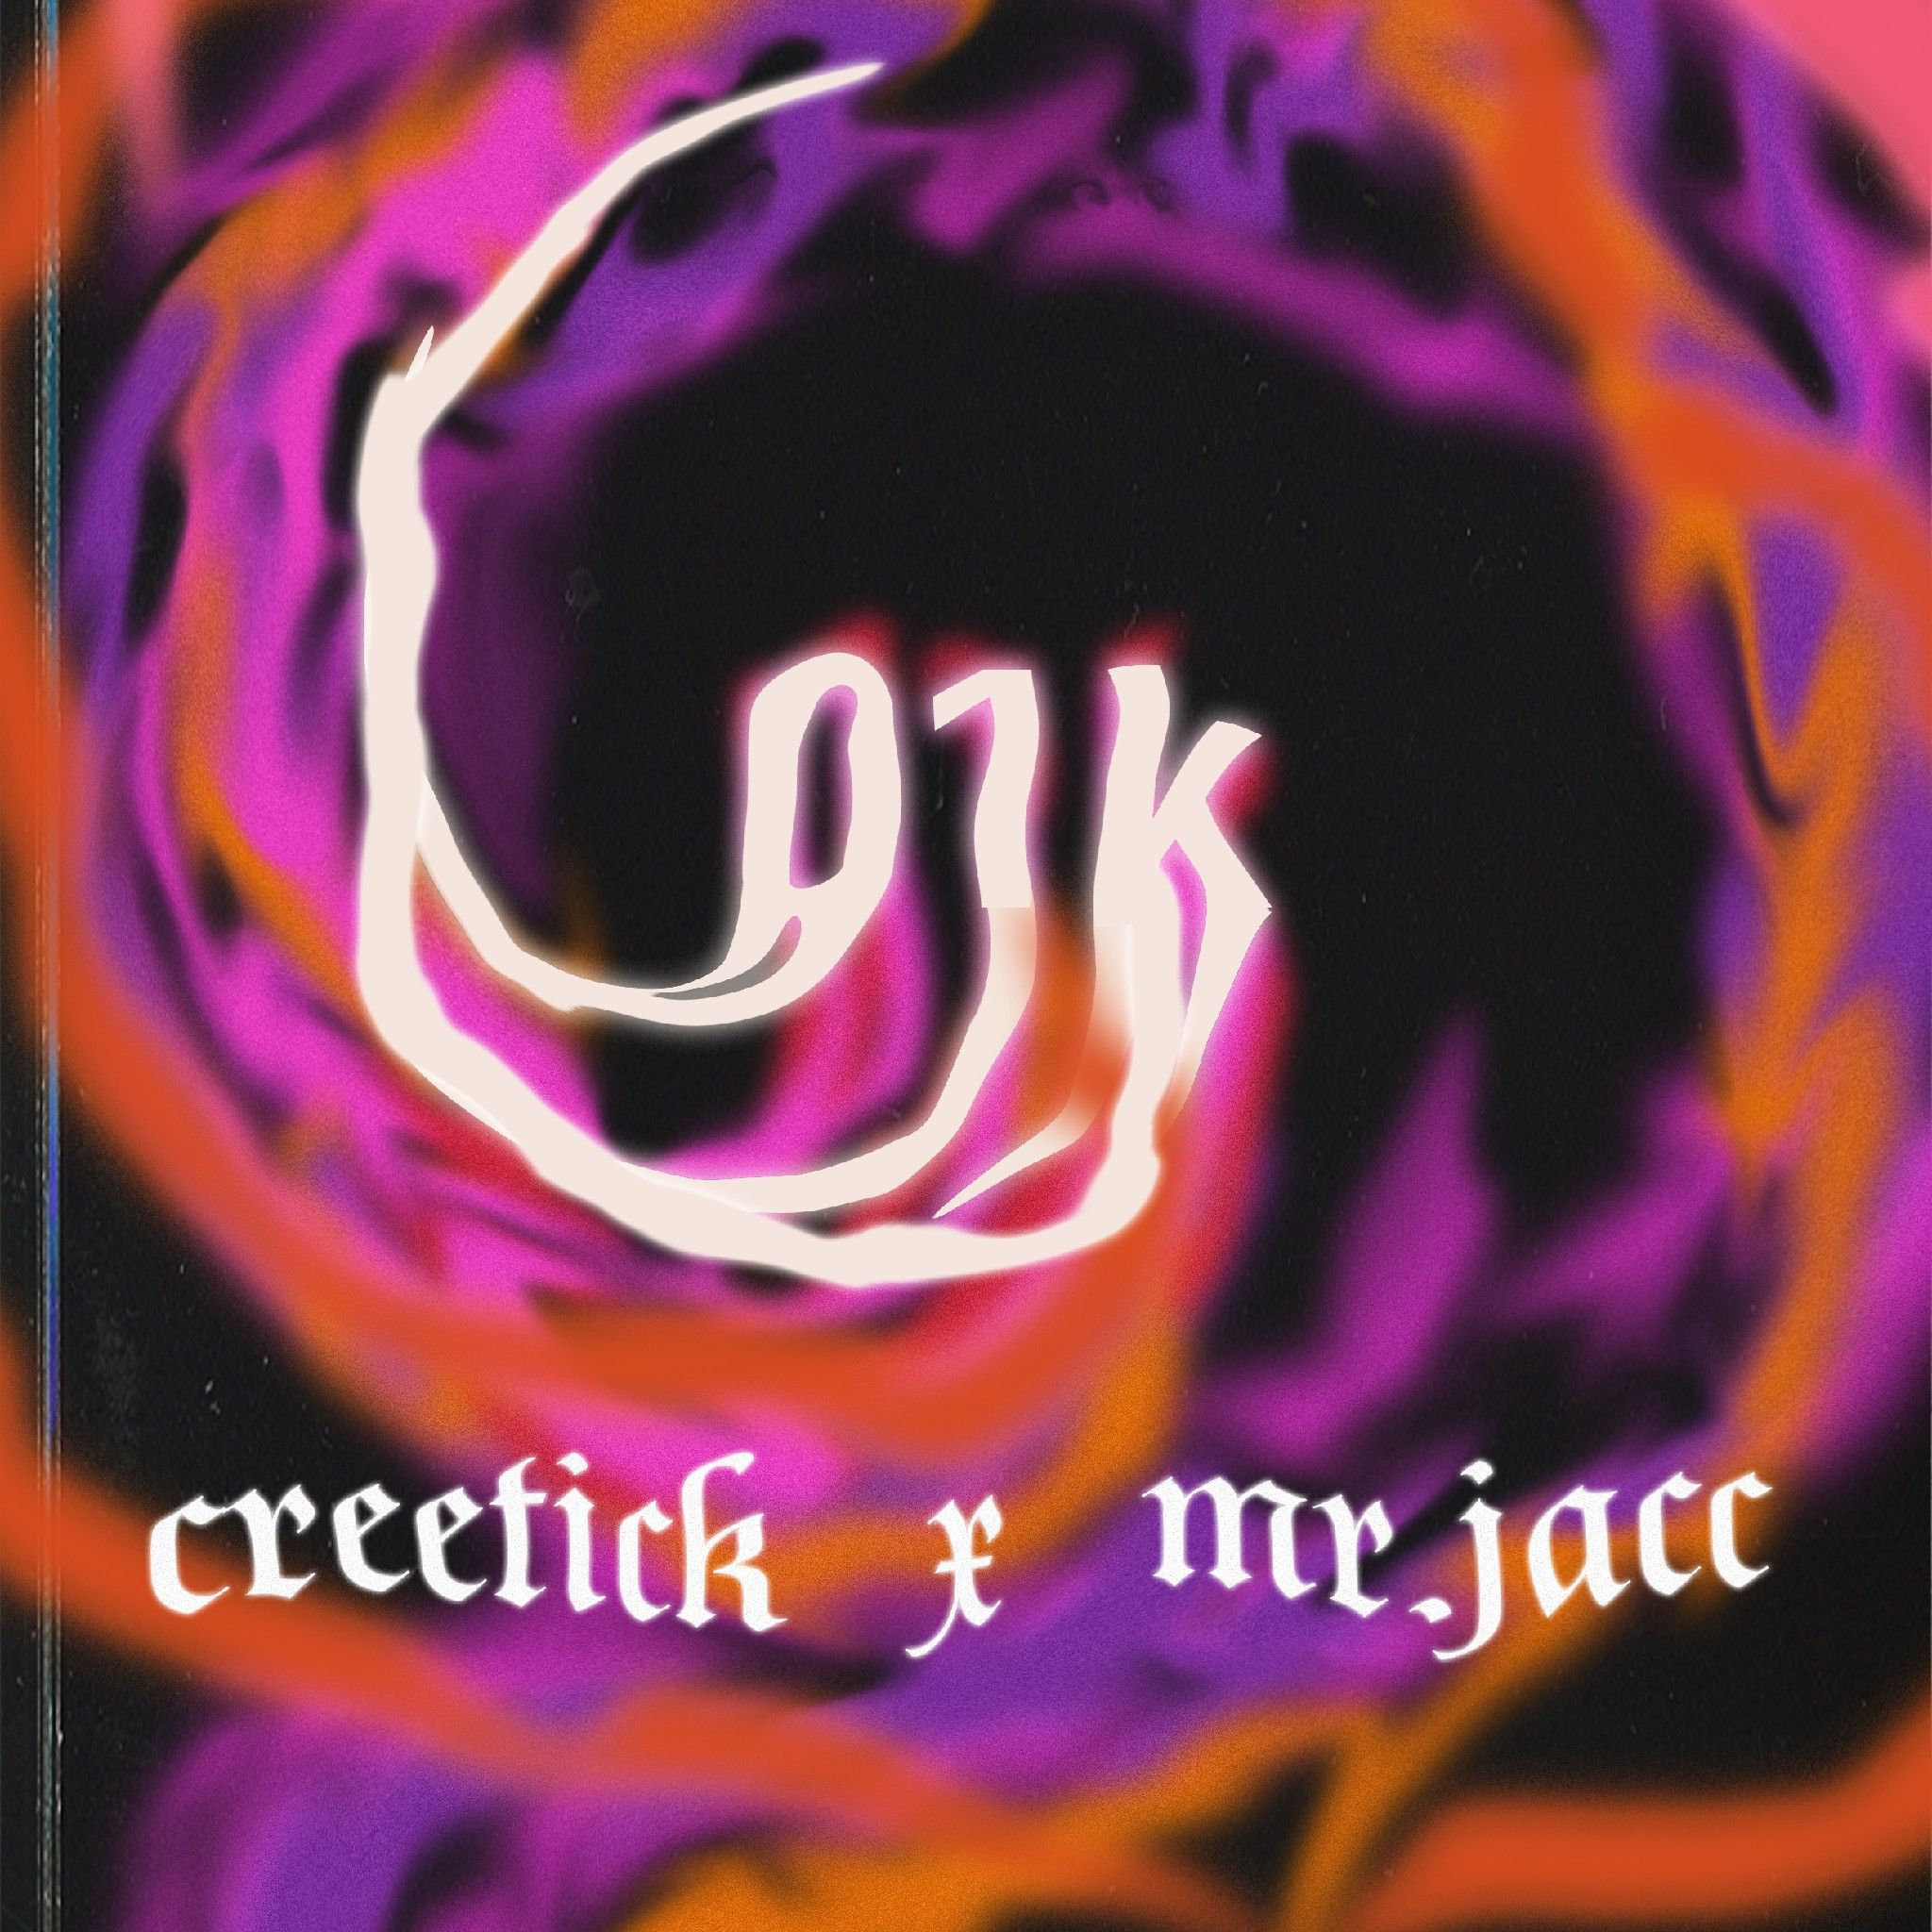 አውርድ 01K w/ Creetick